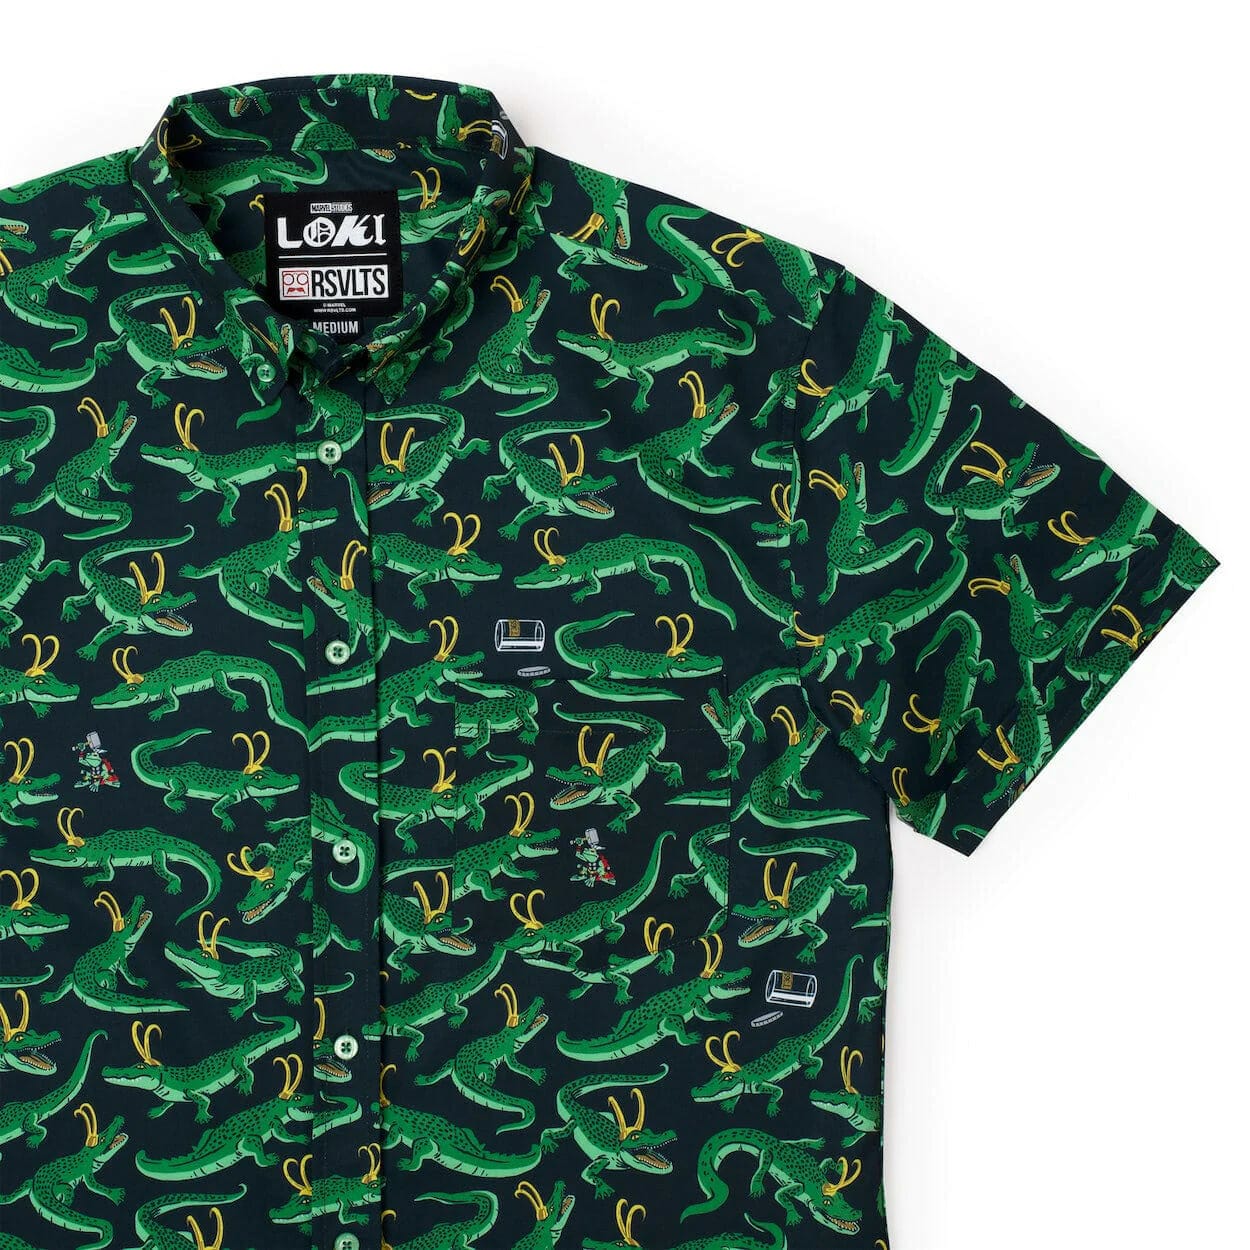 Alligator Loki shirt design